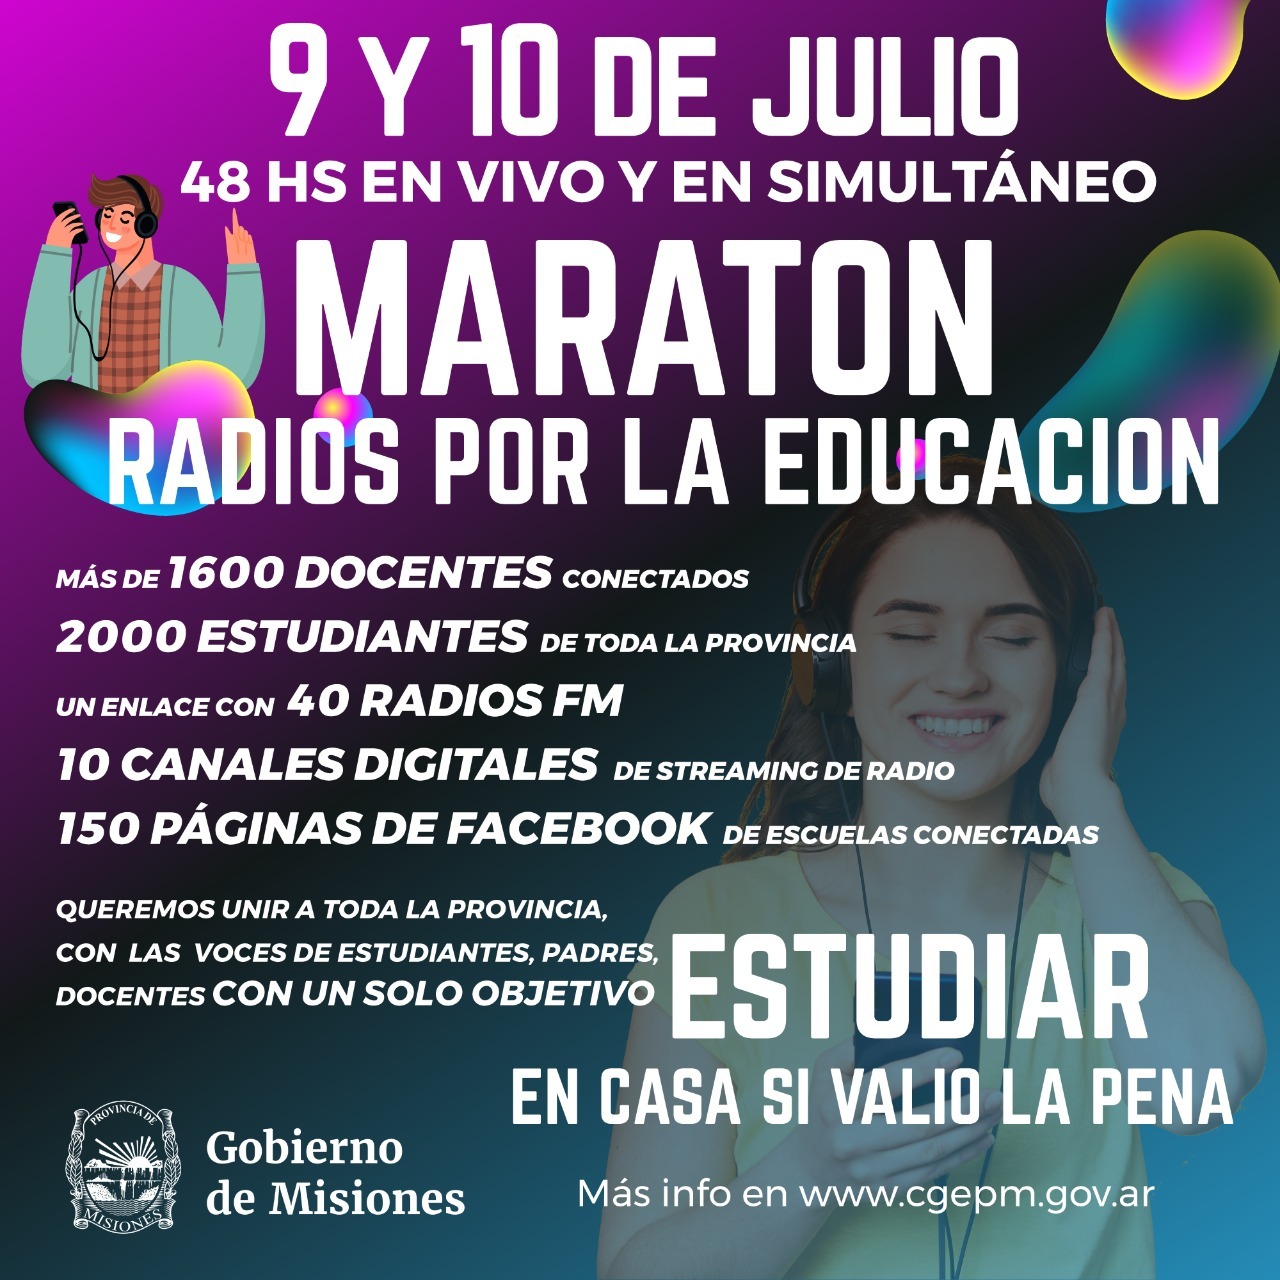 La maratón de radios por la educación unirá las voces de unos 2000 estudiantes misioneros